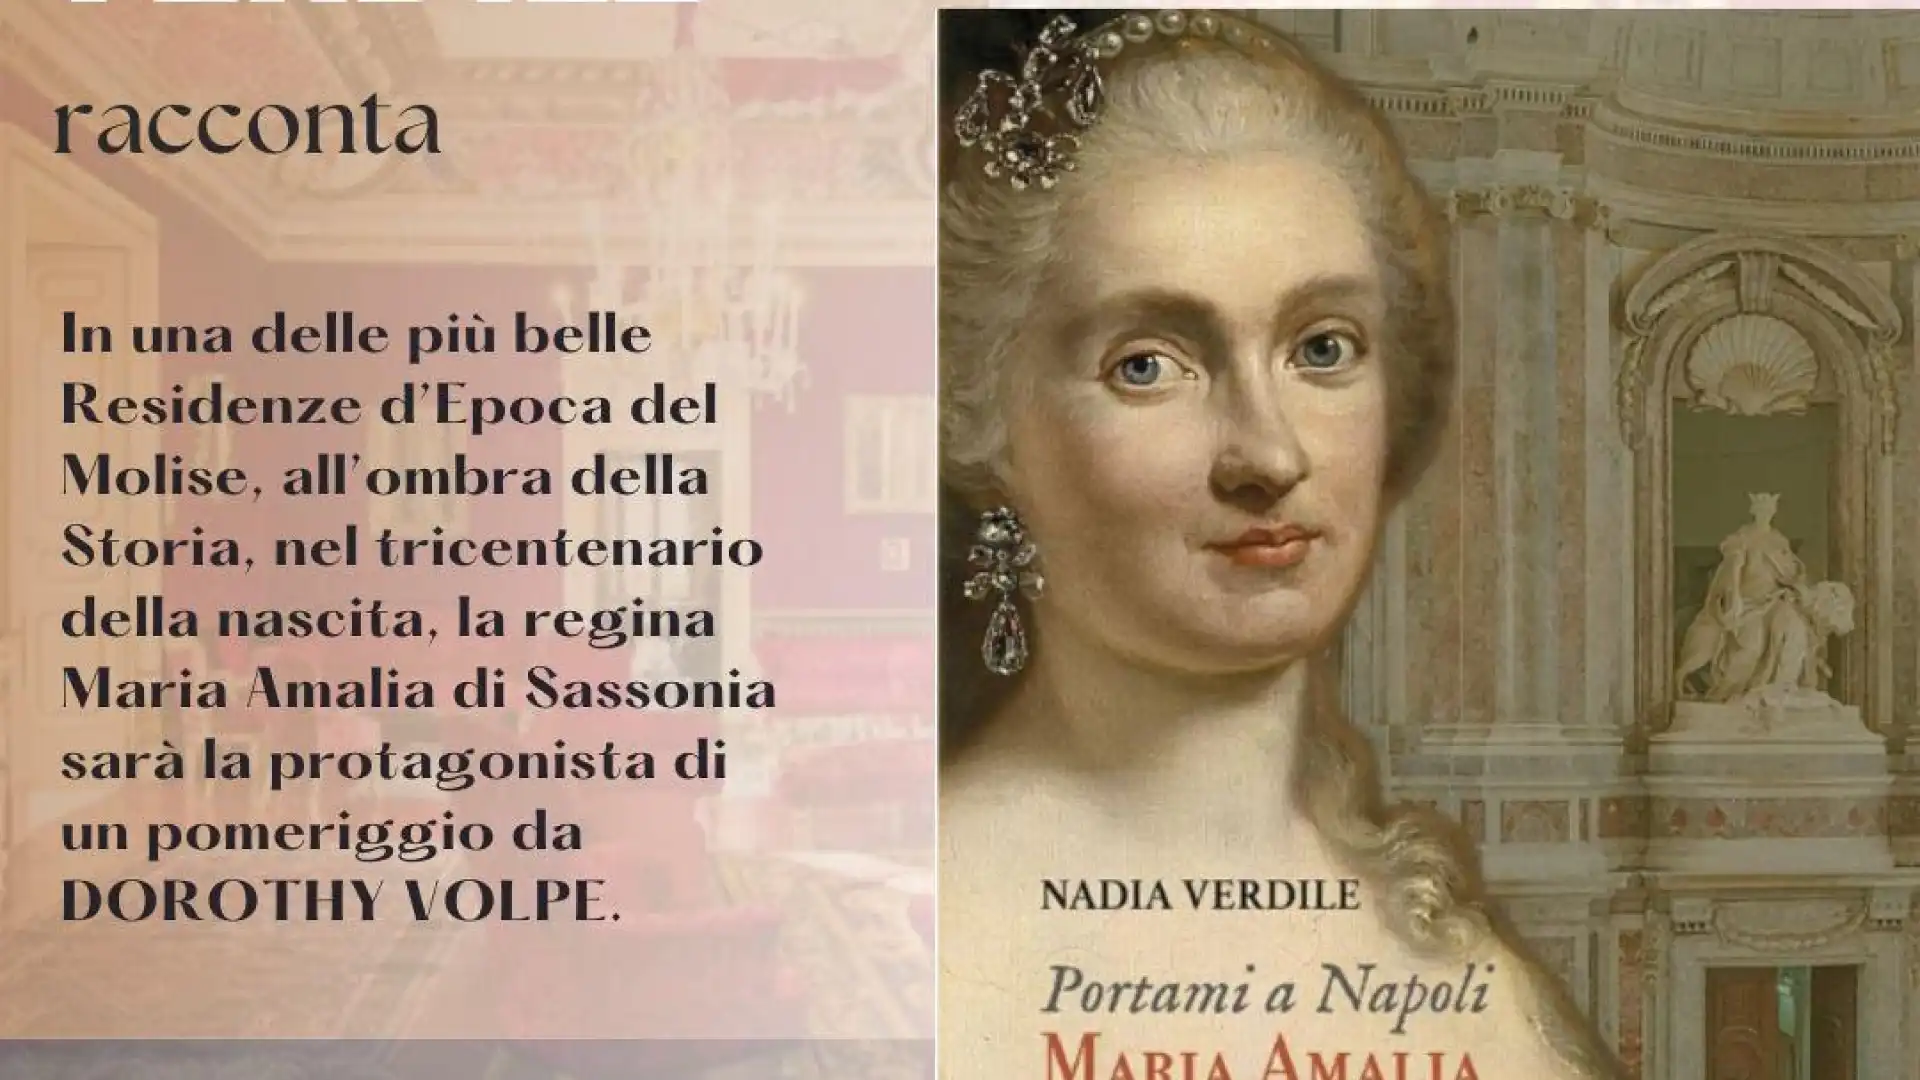 Venafro: Nadia Verdile racconta e presente il volume “Portami a Napoli, Maria Amalia di Sassonia”.